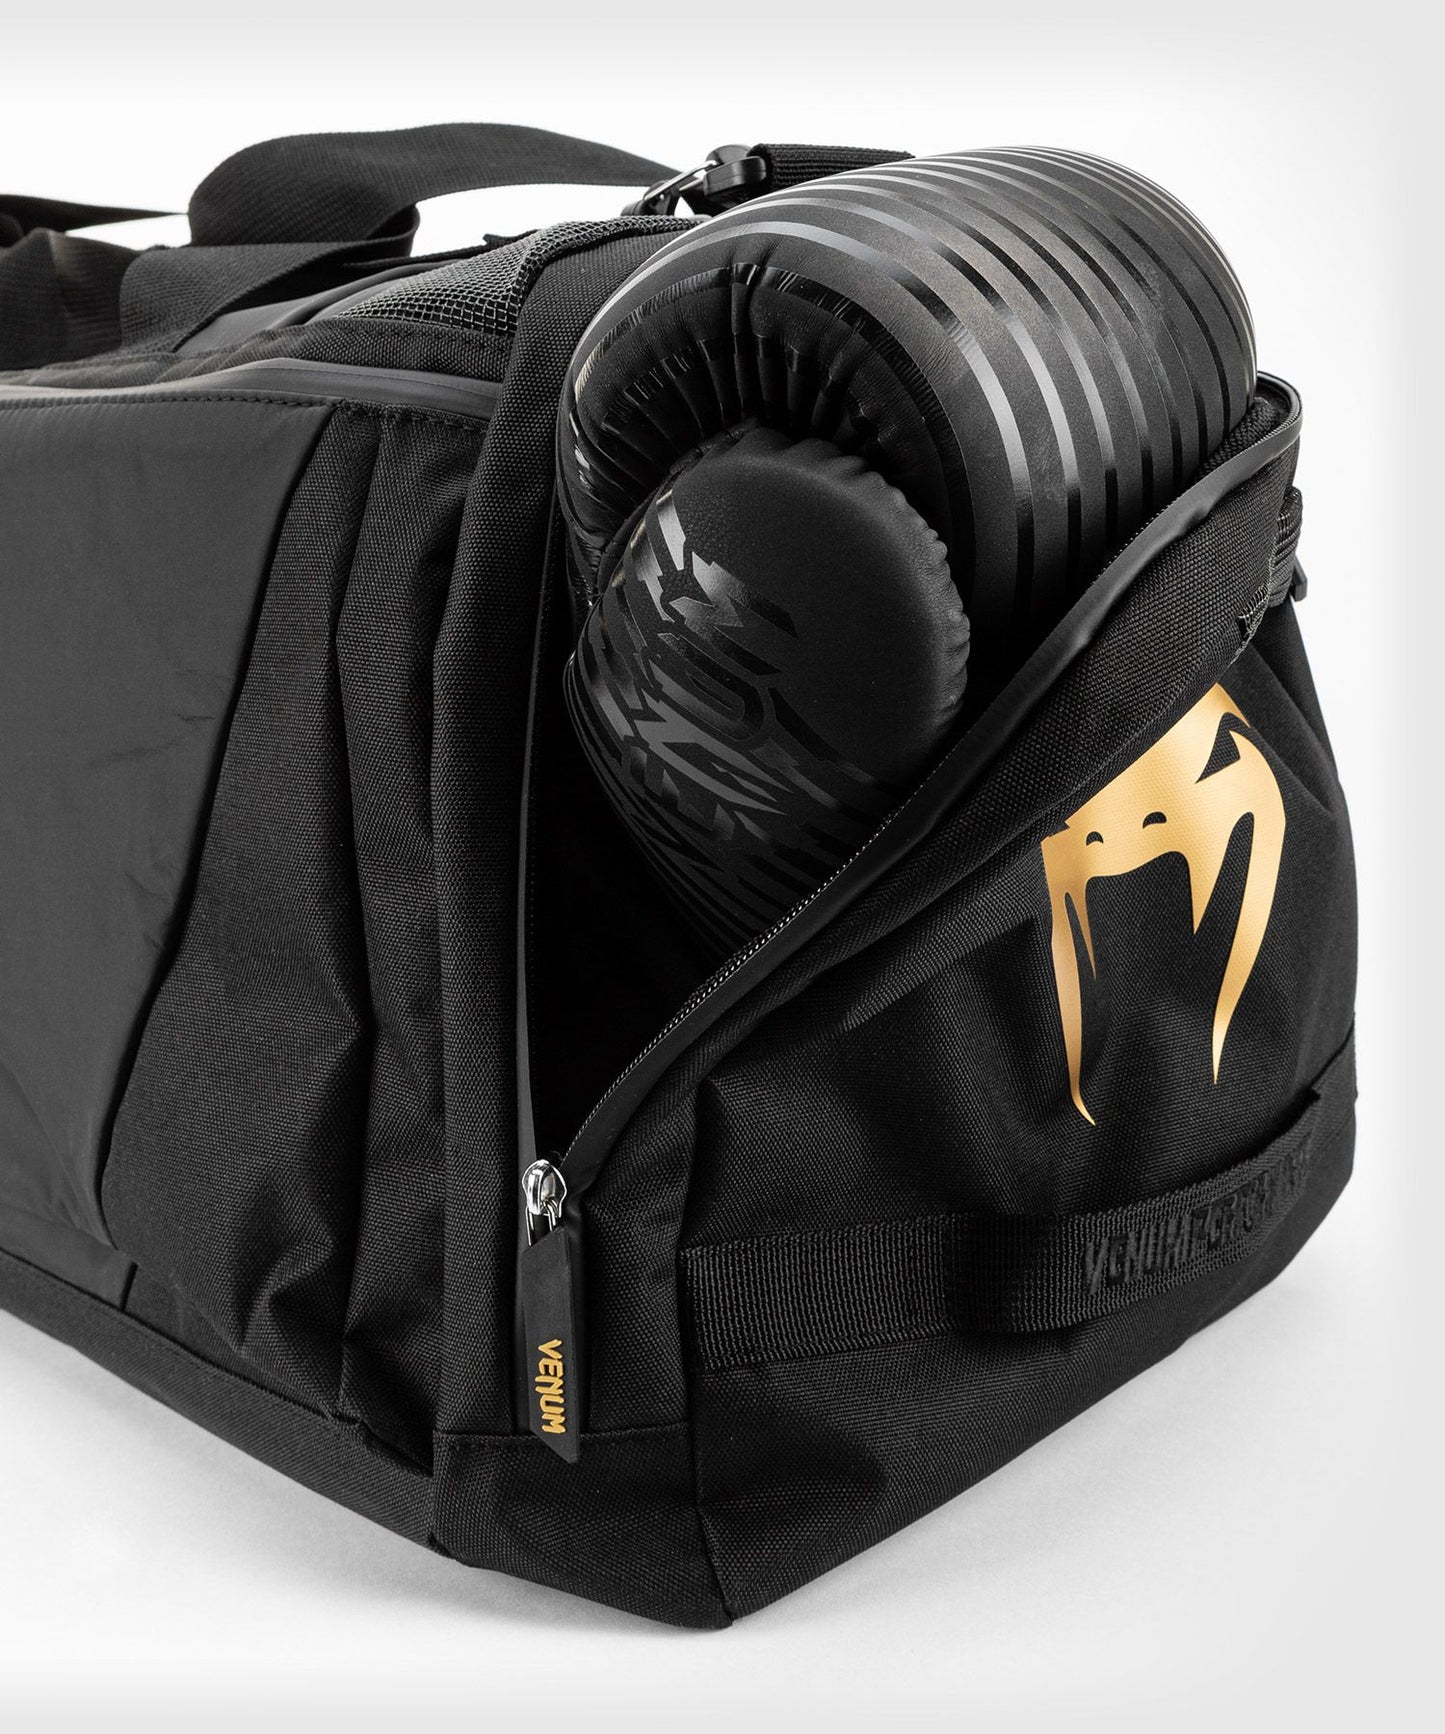 Trainer Lite Evo Sports Bag-Black/Gold